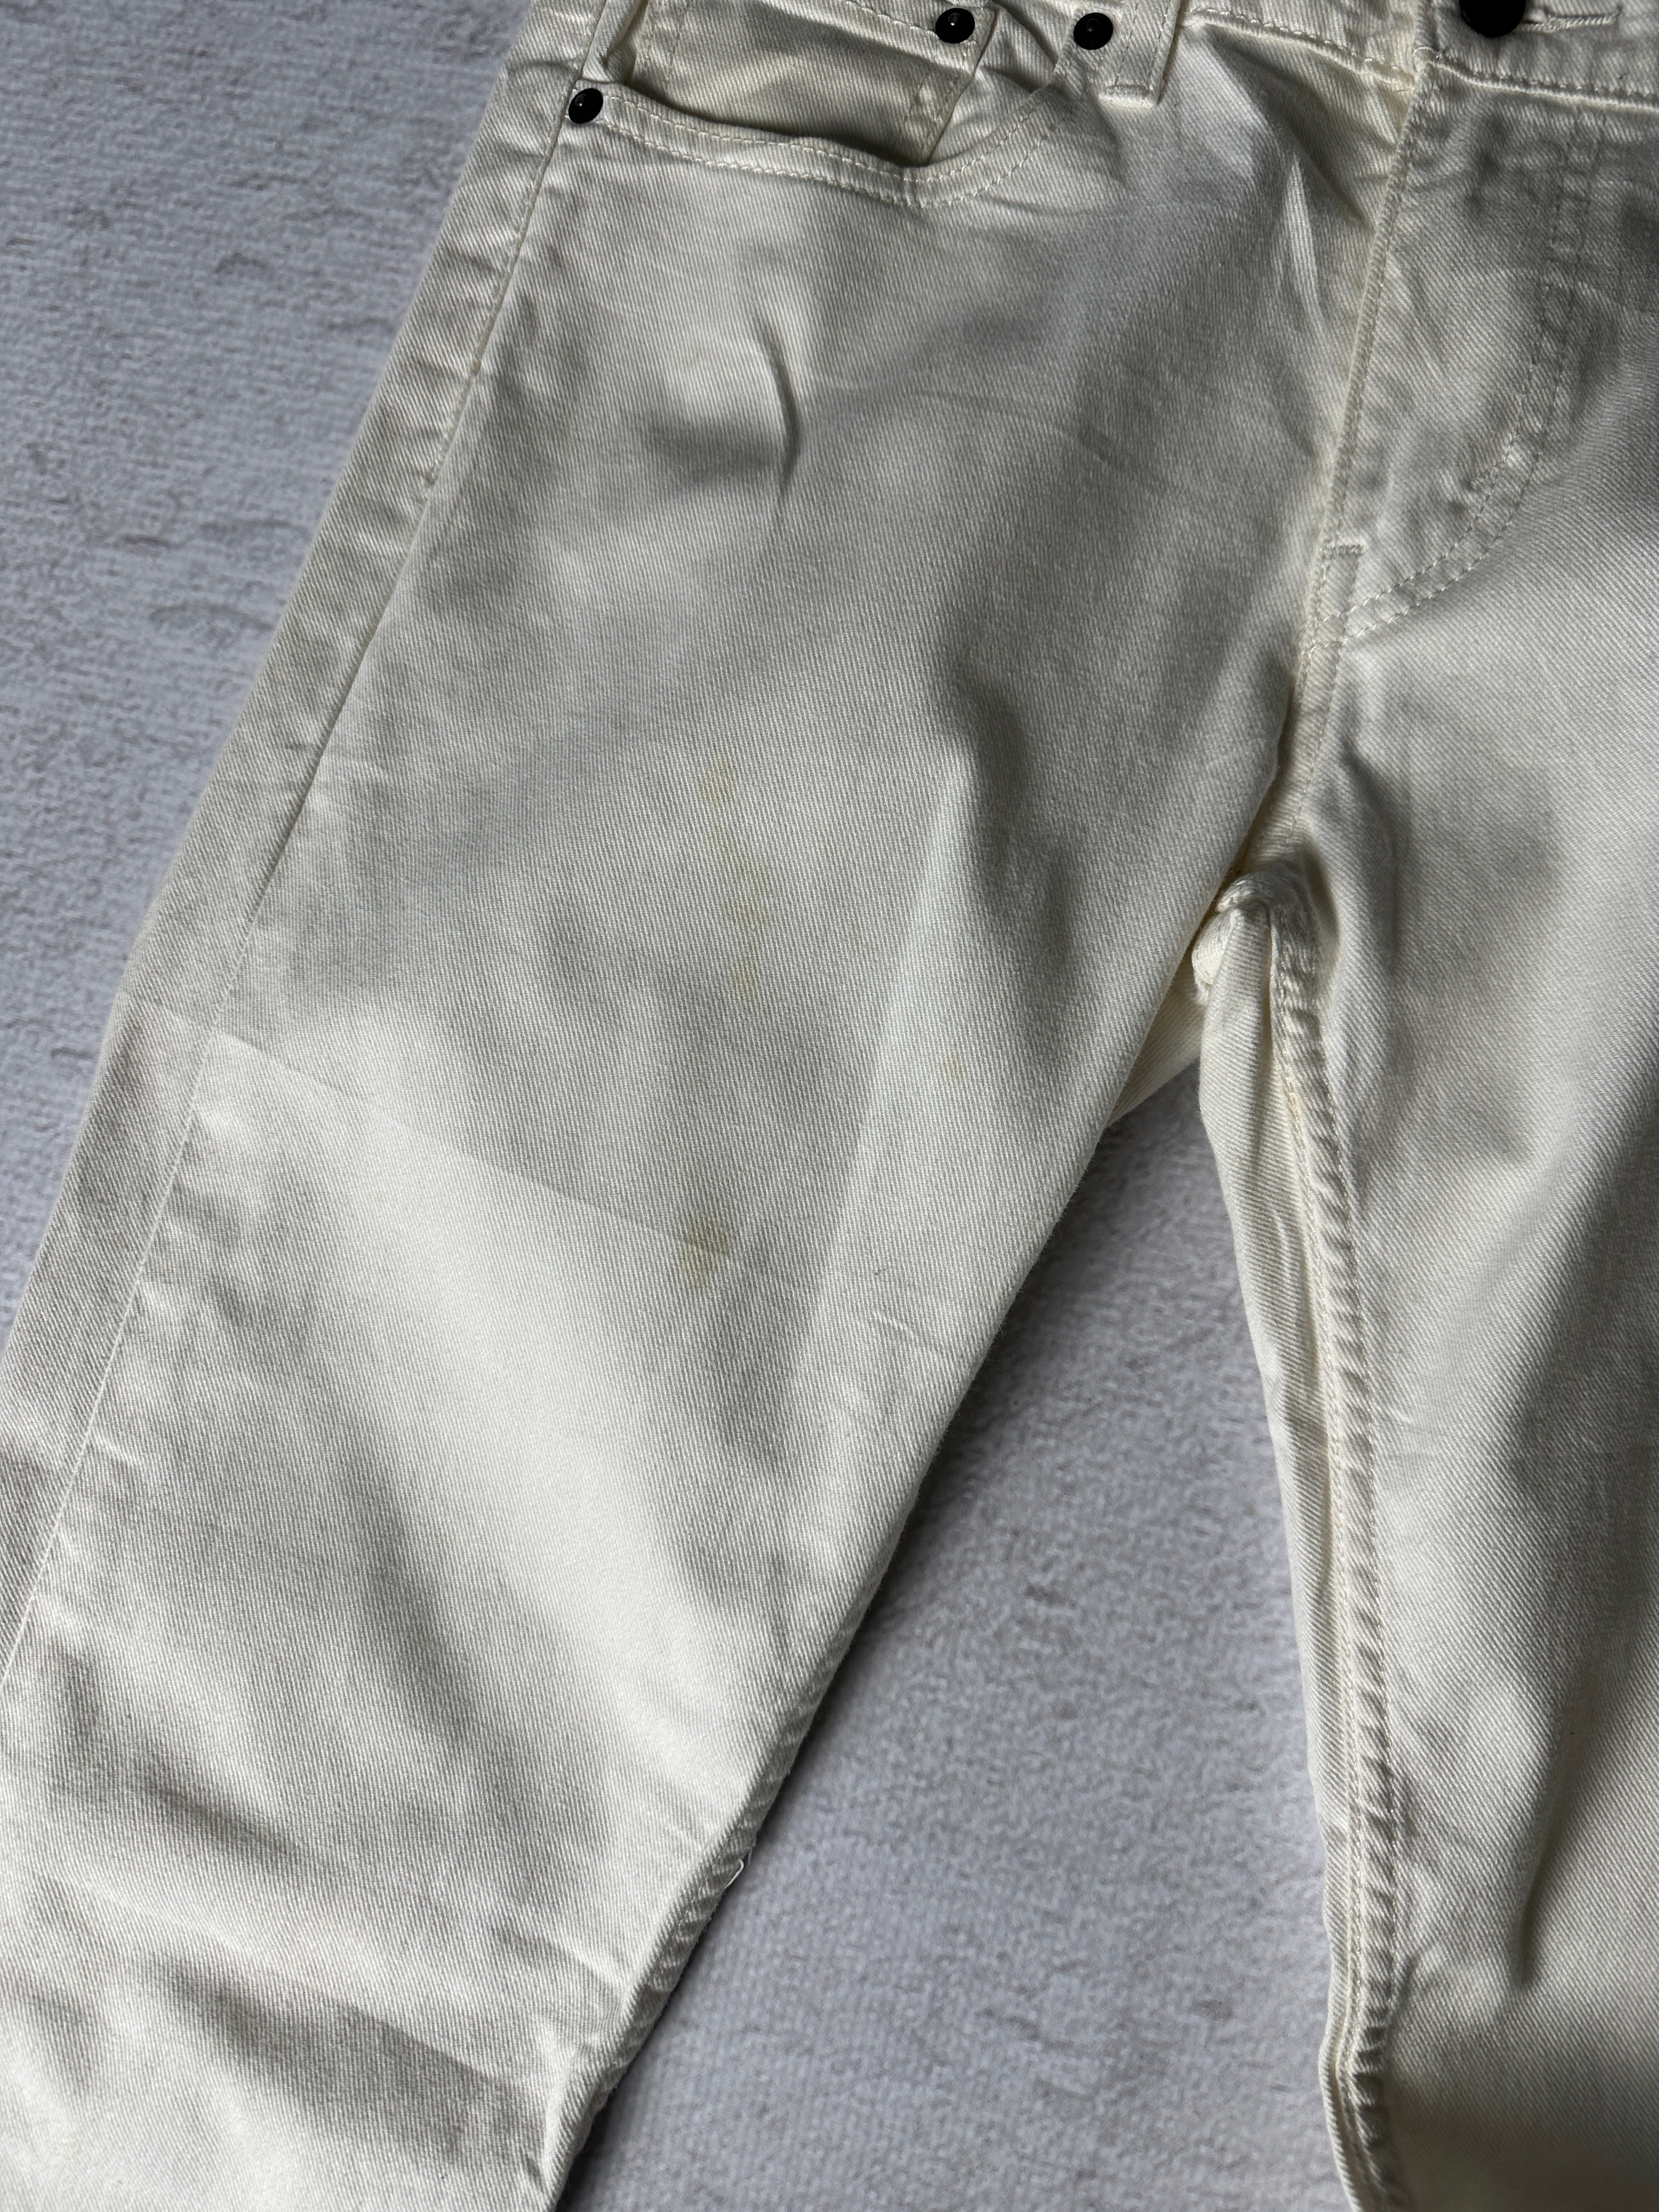 Vintage Levis 511 Jeans - Men's 32W30L